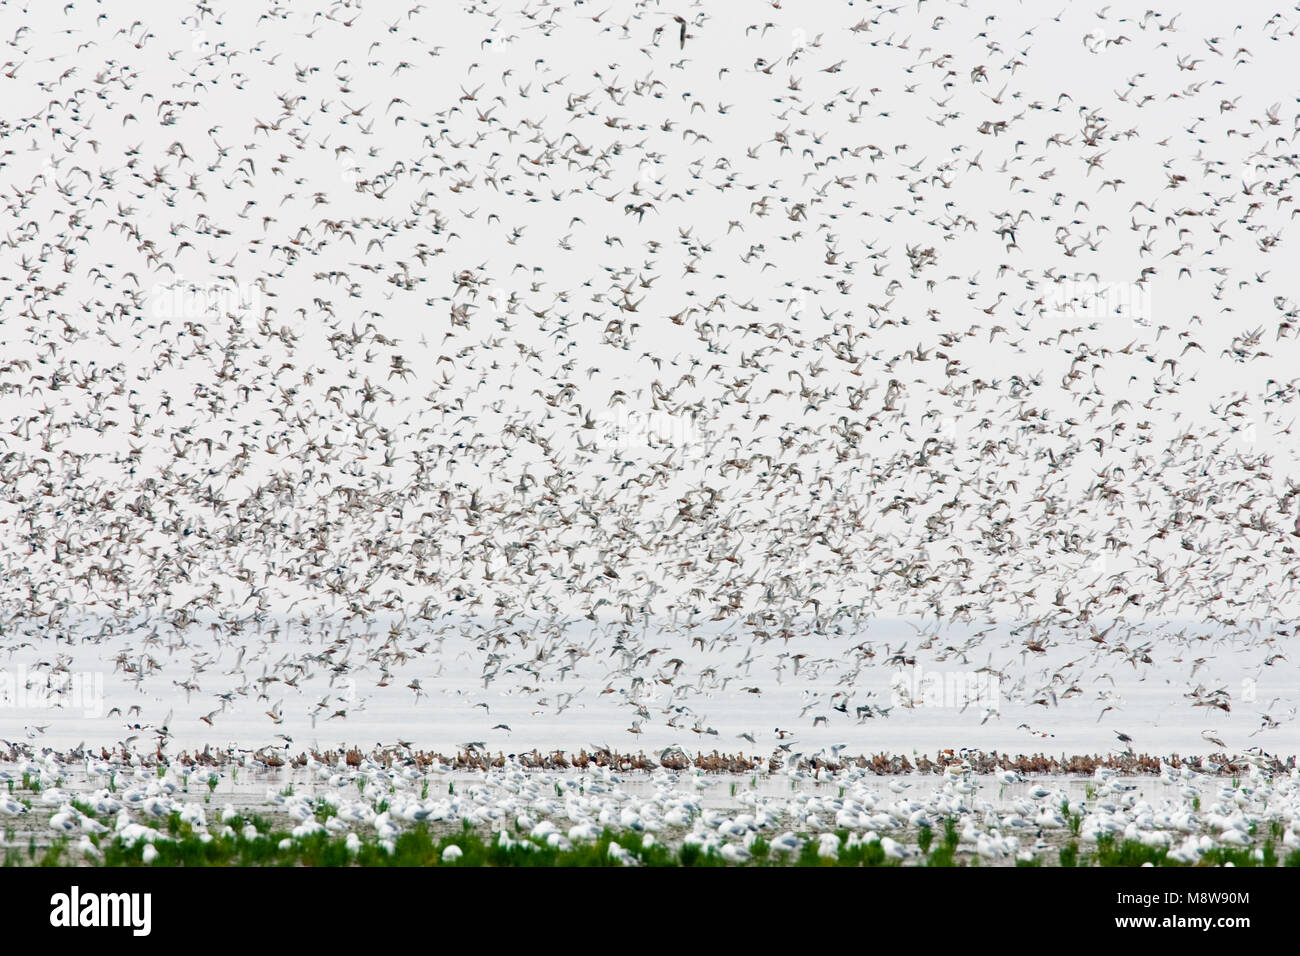 Vogels over de Waddenzee, Birds at the Waddensea Stock Photo